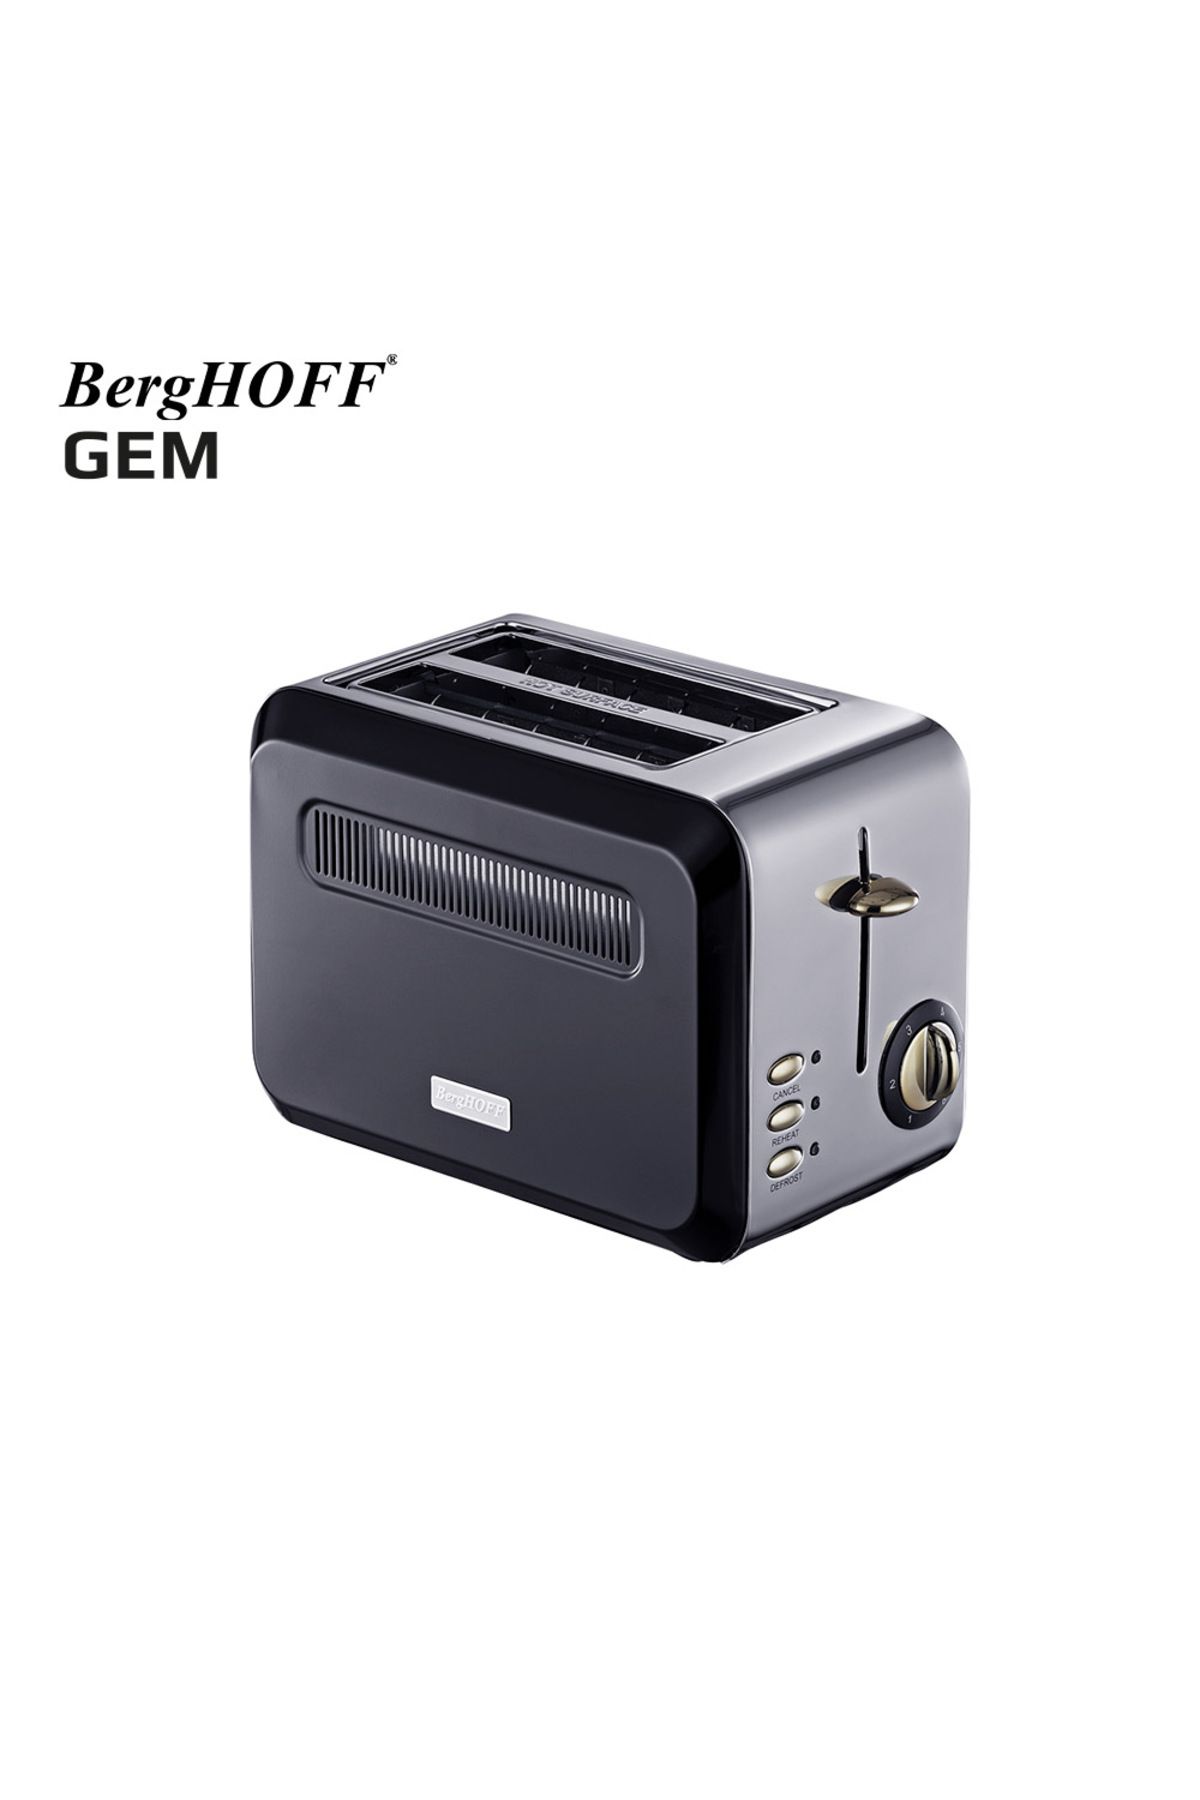 Berghoff GEM TITAN 1.7 Litre Parlak Gümüş Siyah İki Dilim Ekmek Kızartma Makinesi